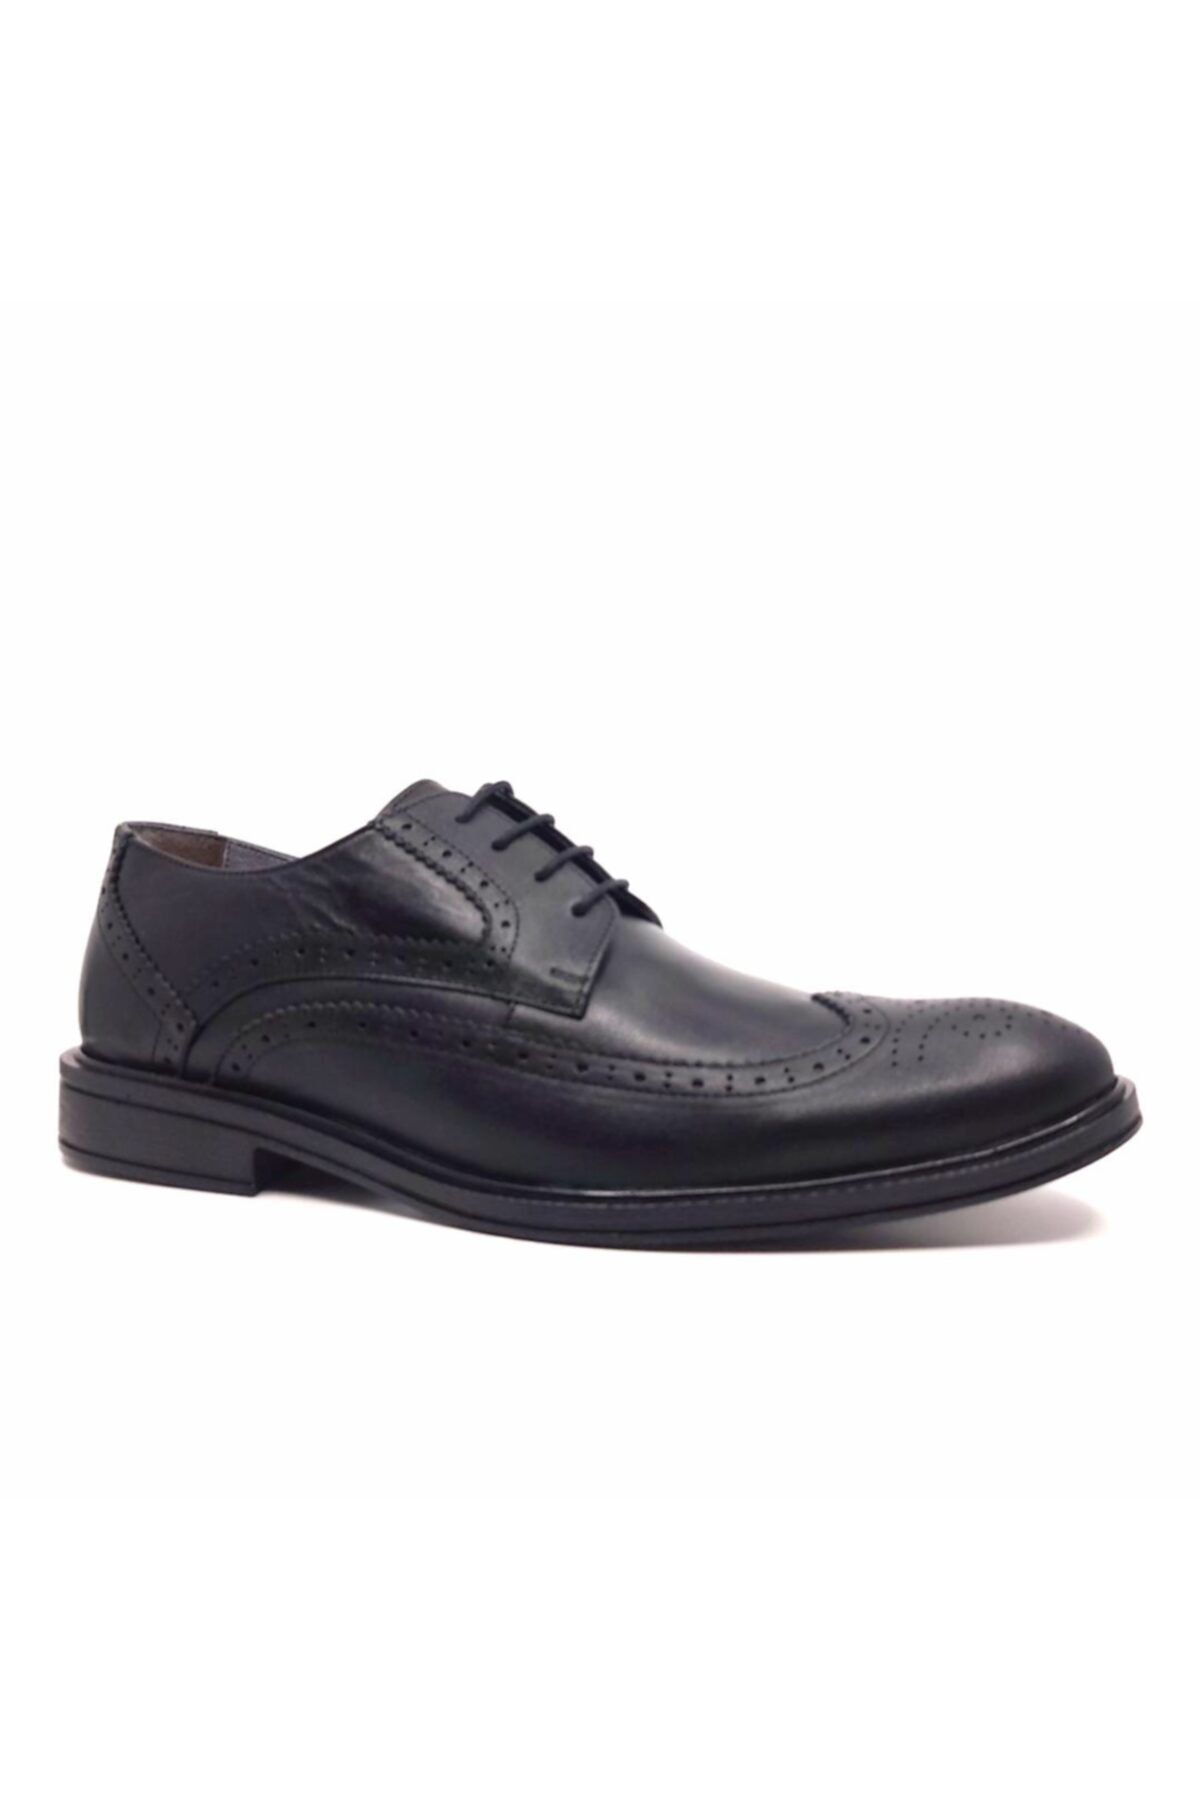 Çetintaş Luıs Fıgo 4440 Xl(45-48 Numara Aralığı) Siyah Deri Erkek Ayakkabı